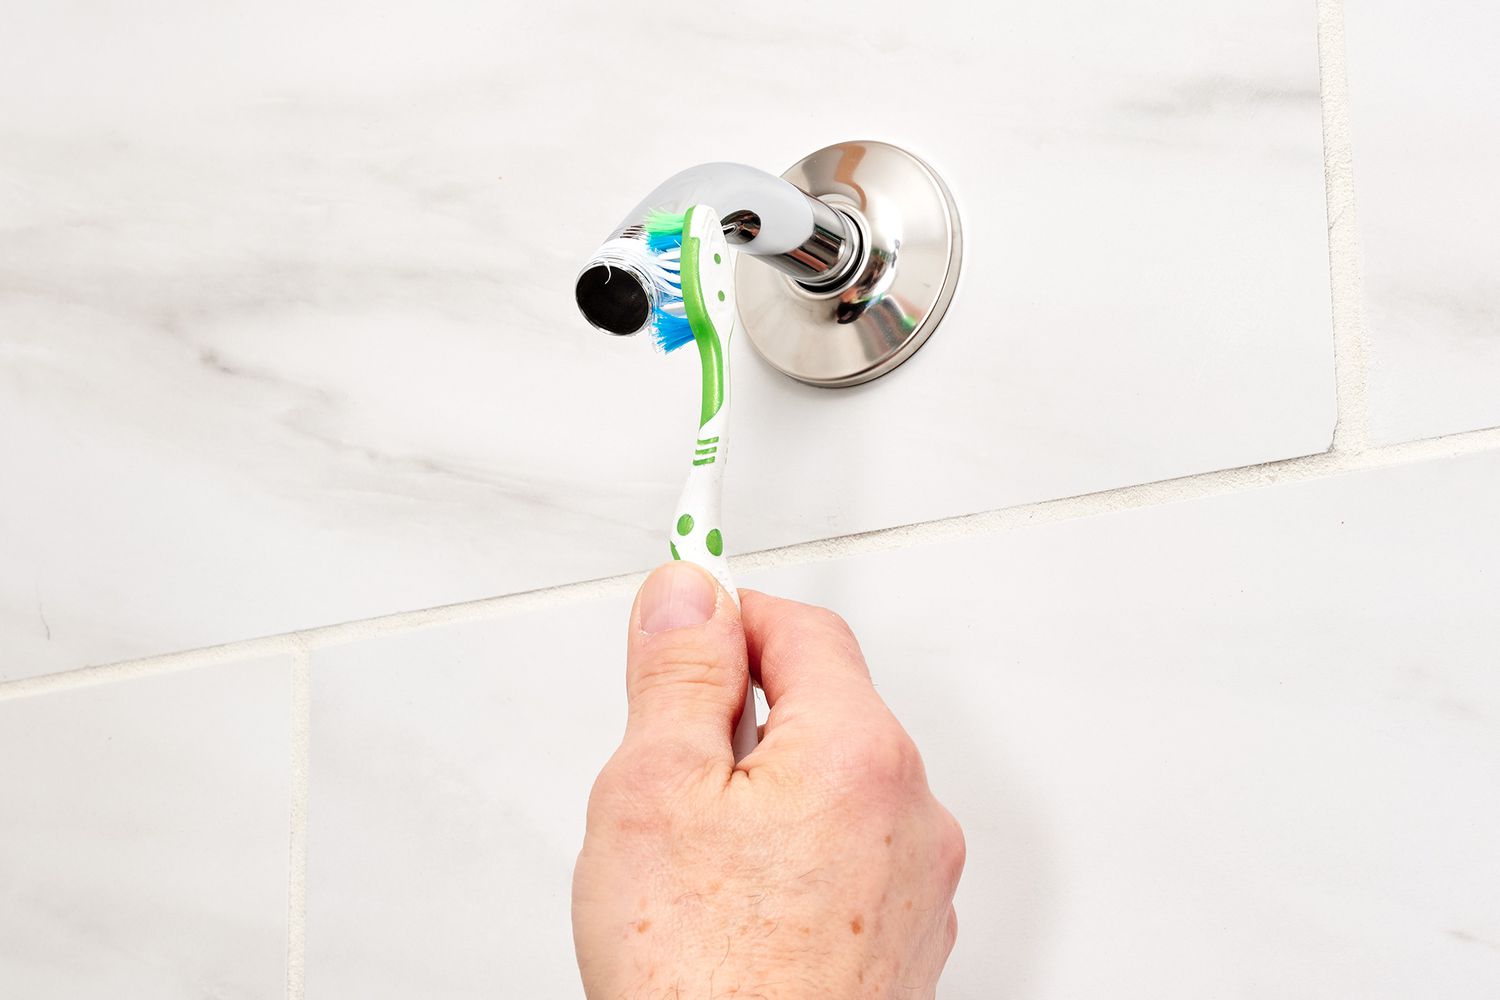 Cepillo de dientes viejo restregando mugre de las roscas del brazo de ducha